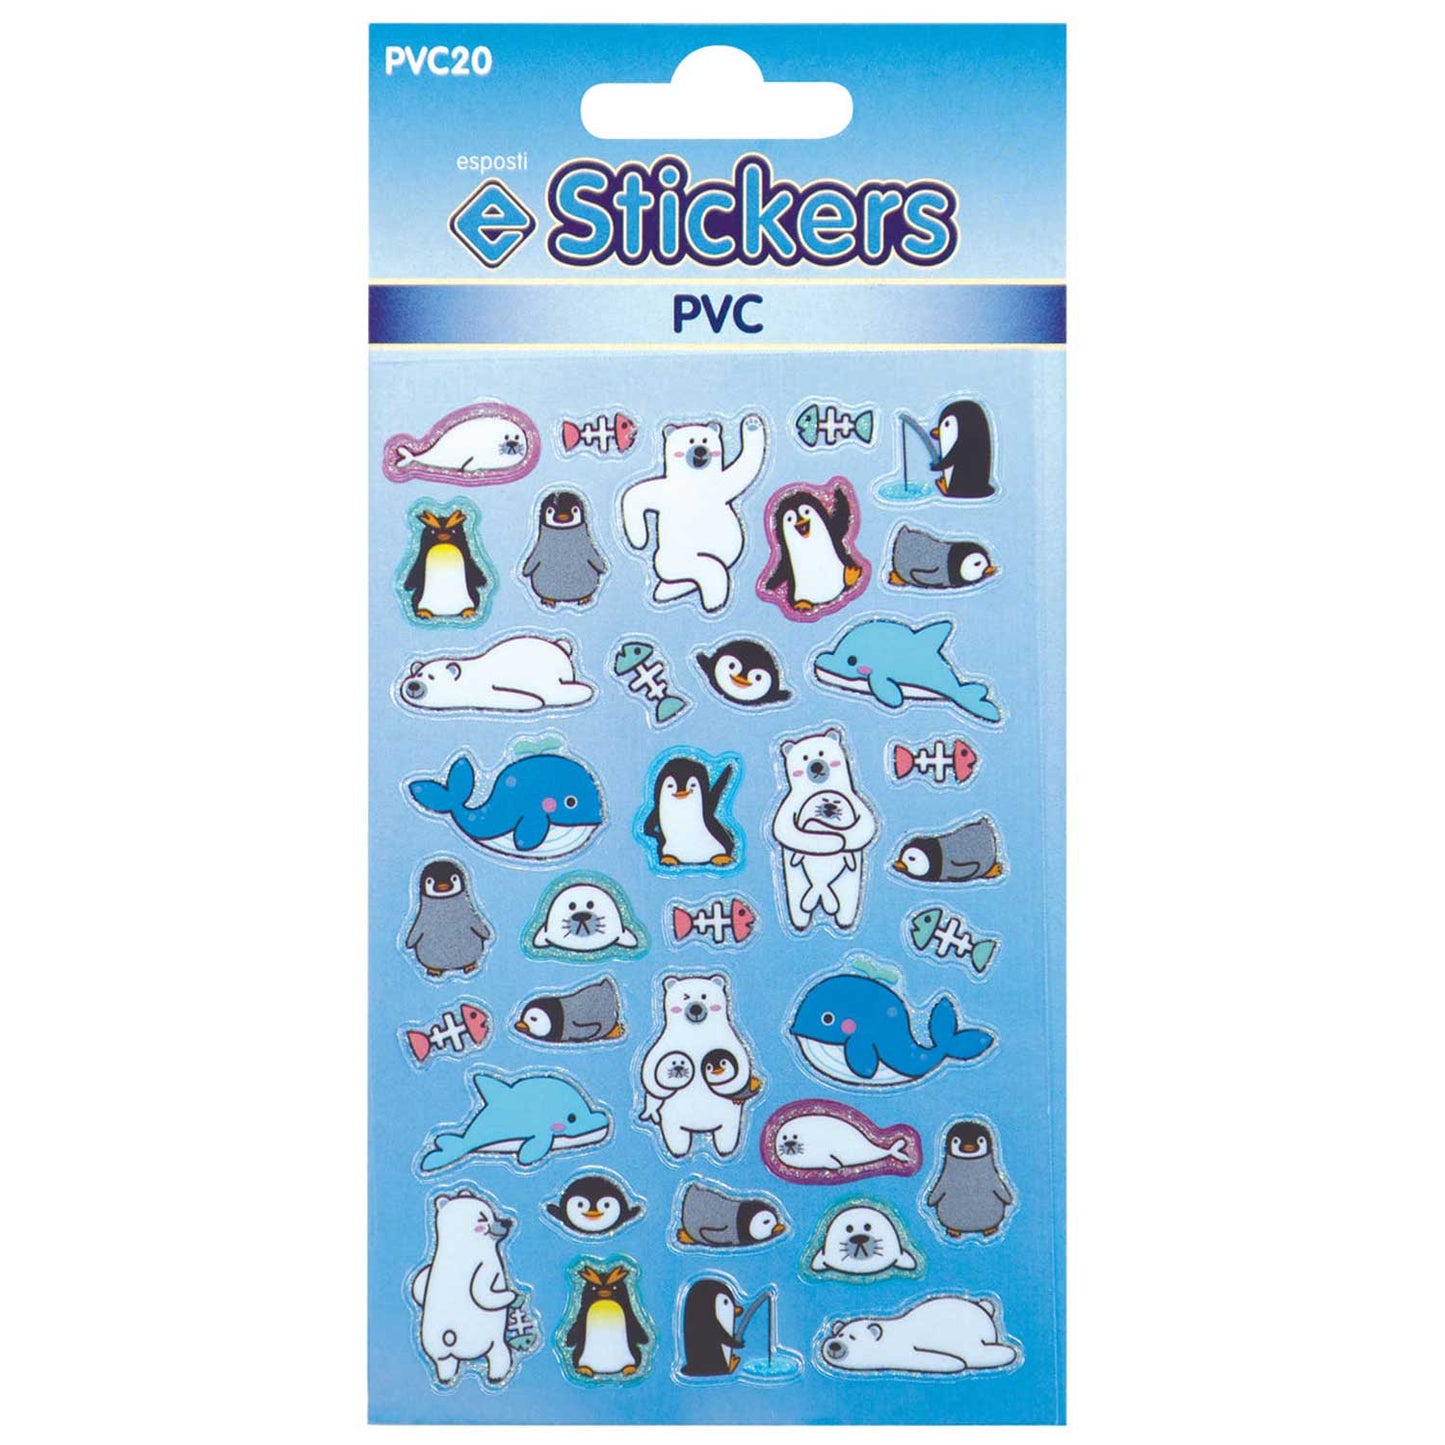 PVC Penguins & Seals Stickers - PVC20